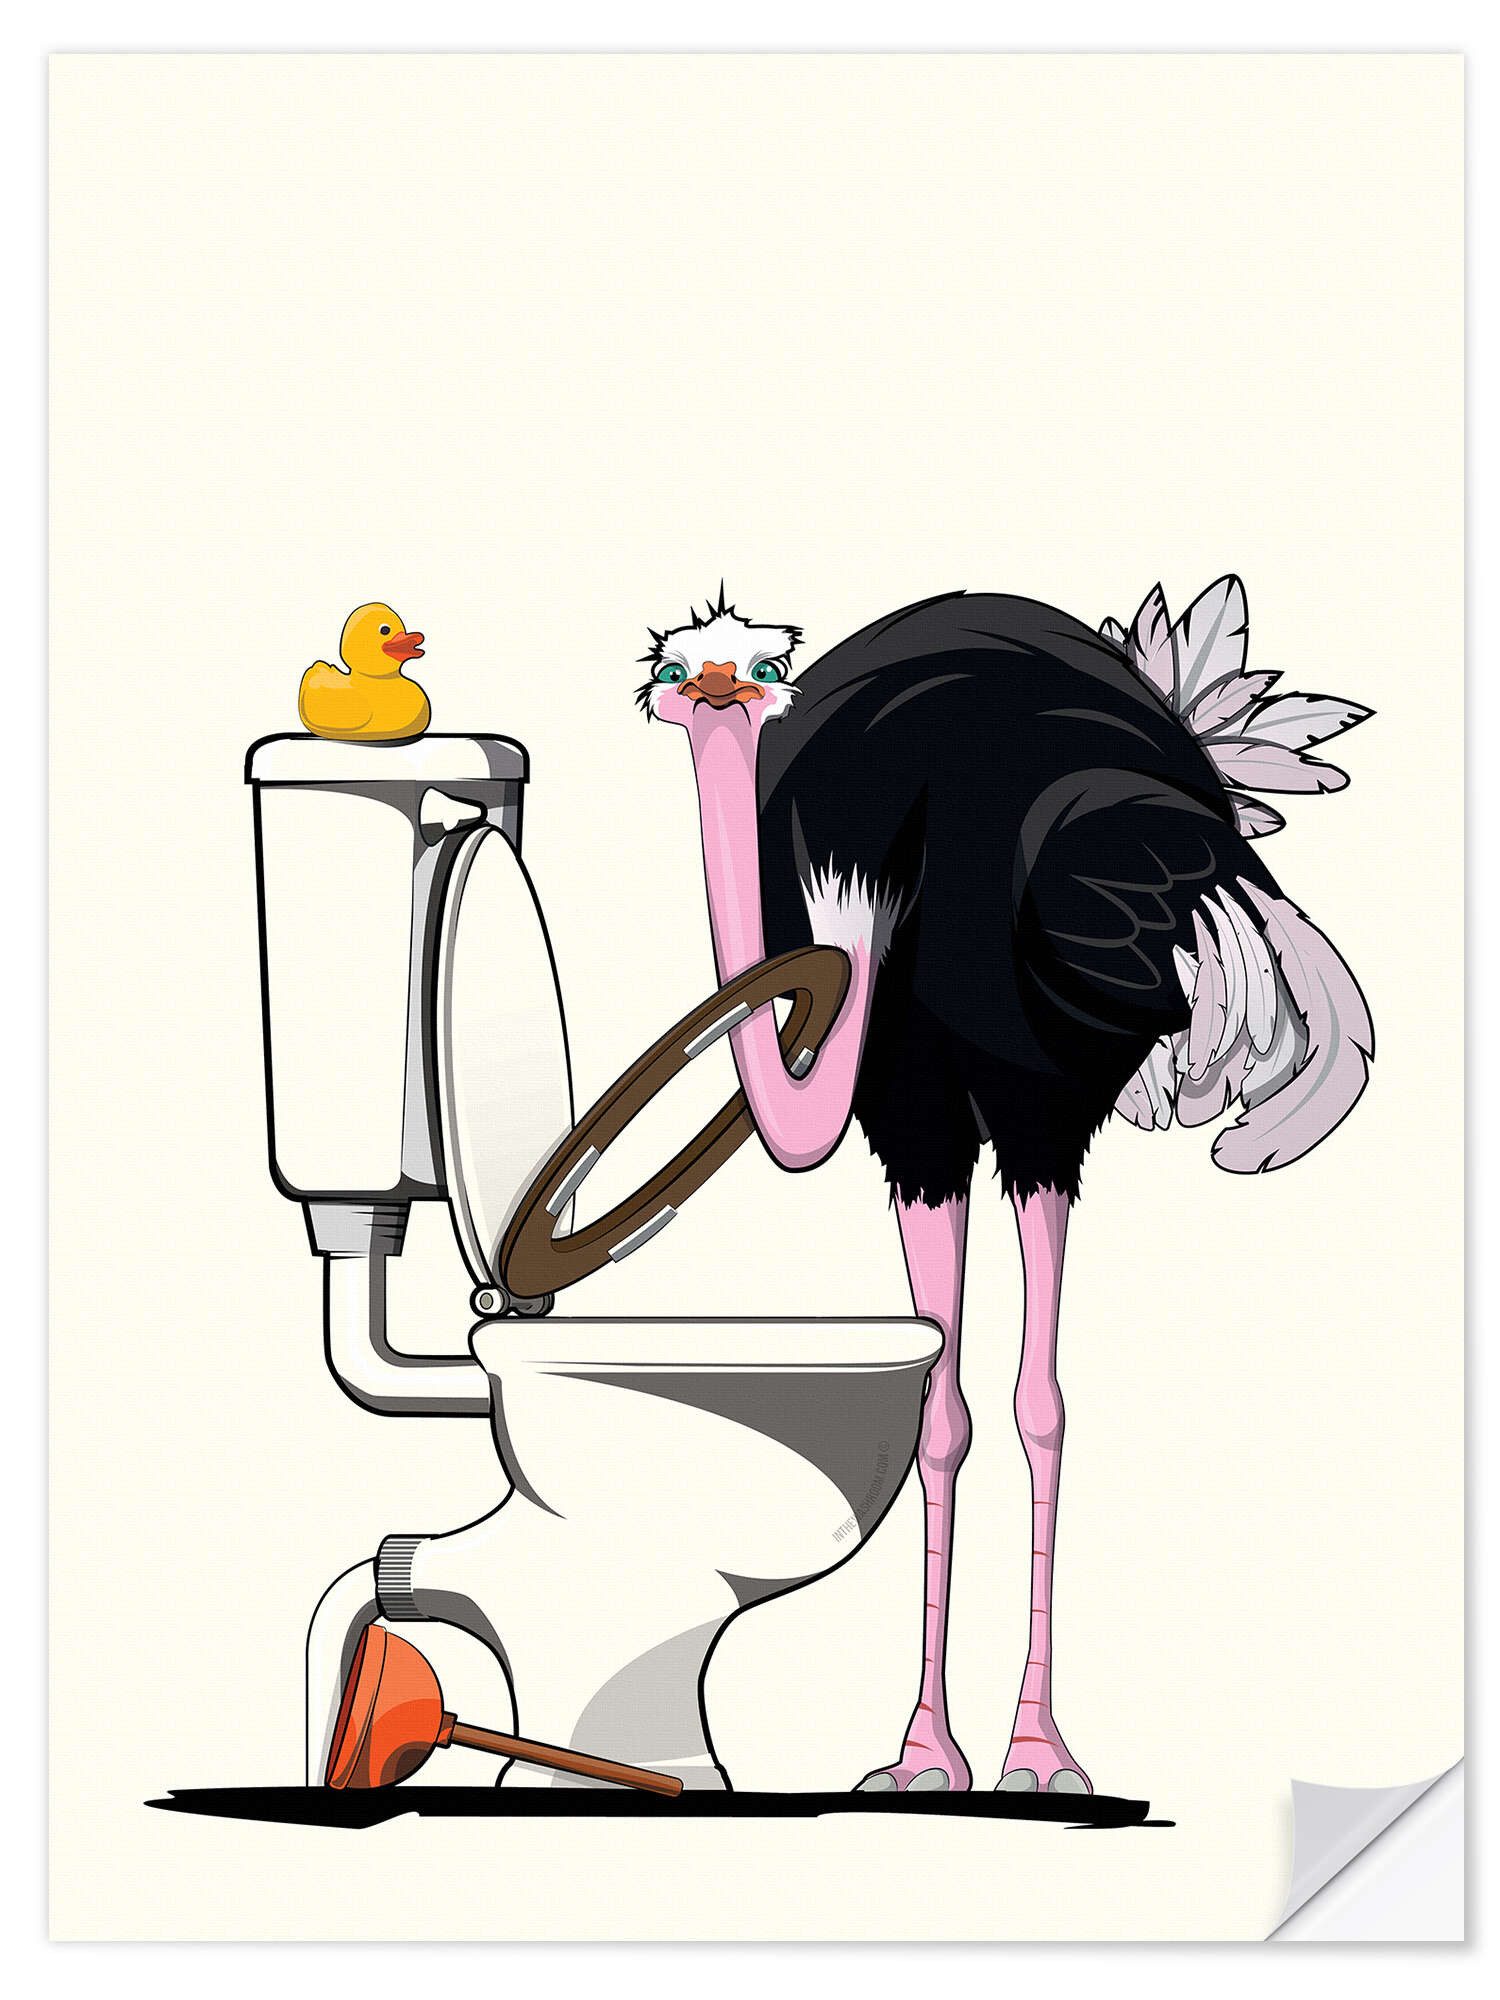 Posterlounge Wandfolie Wyatt9, Vogelstrauß auf der Toilette, Badezimmer Illustration